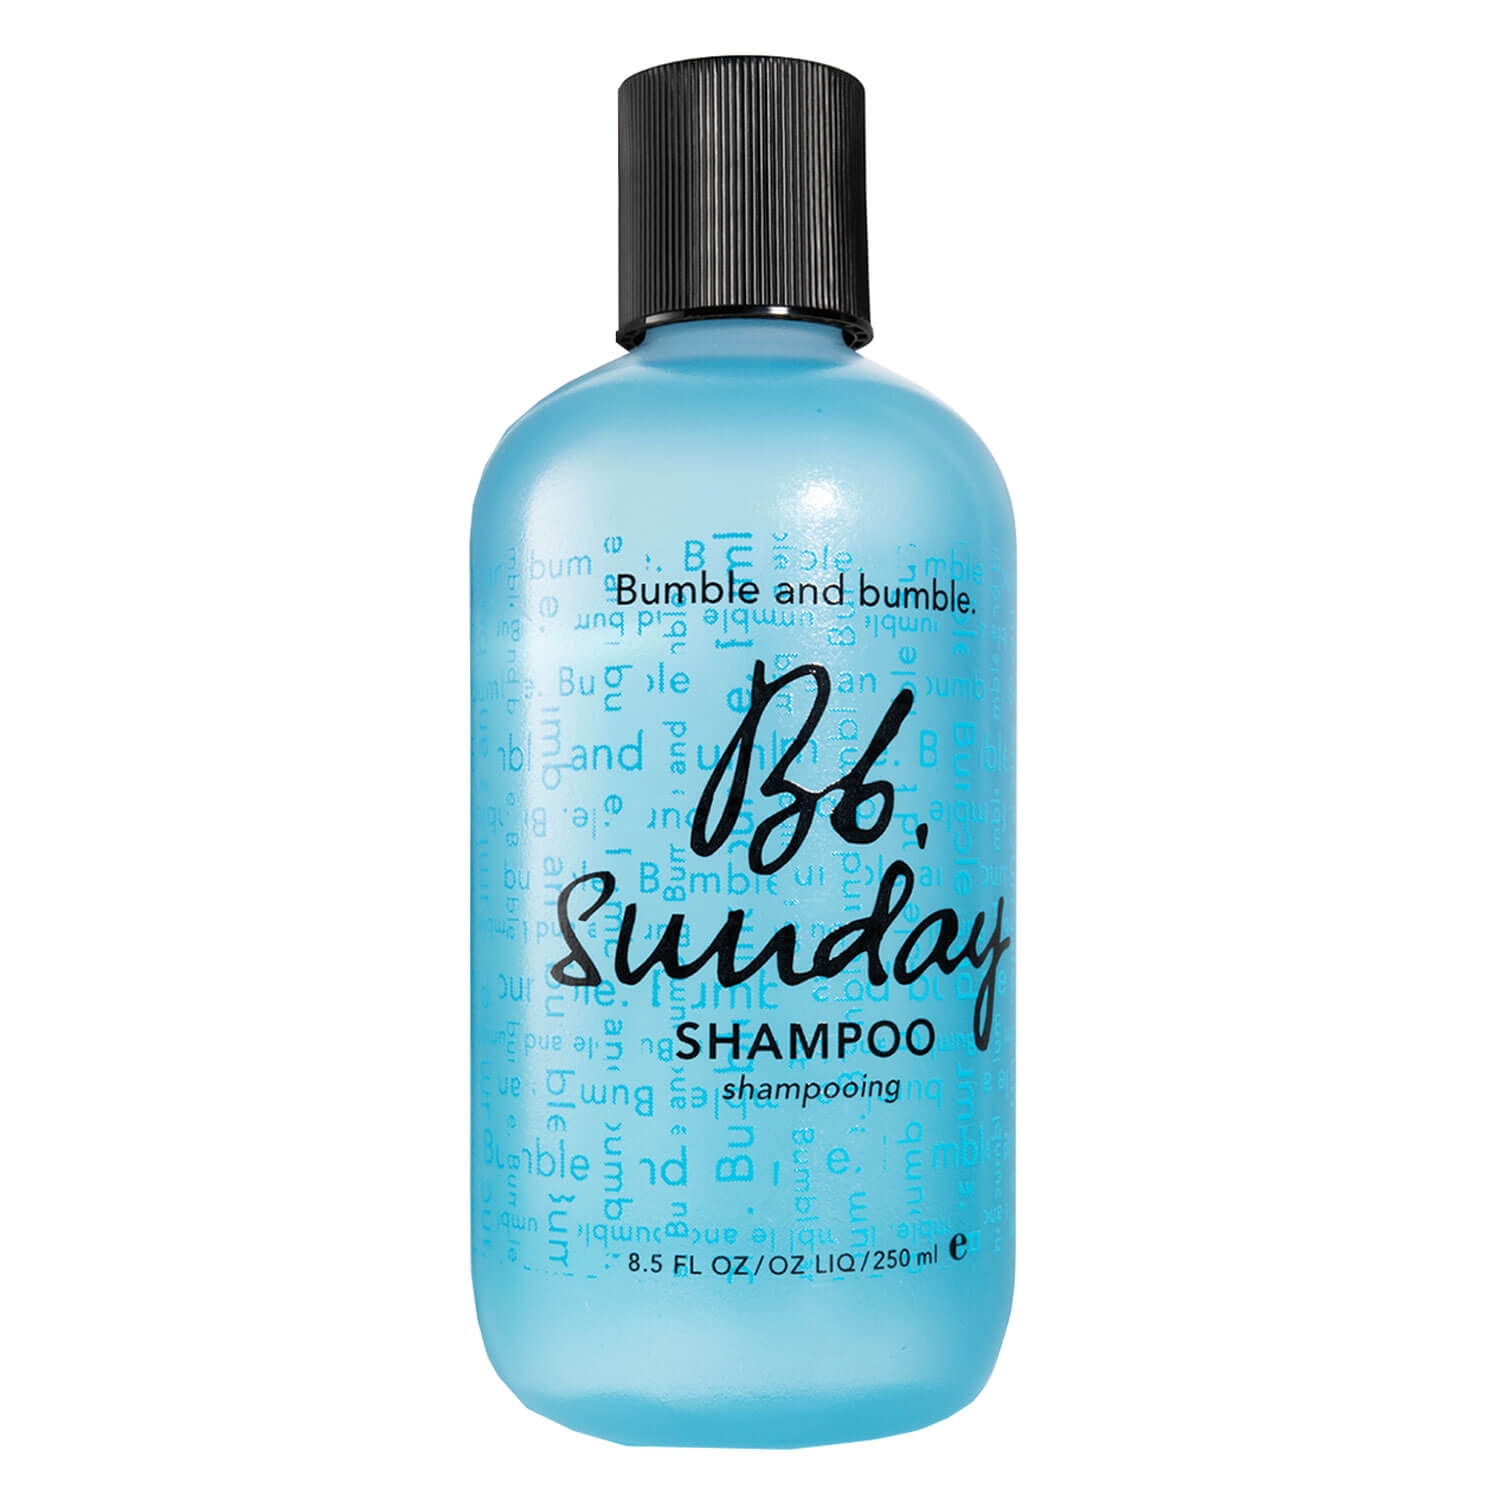 Produktbild von Bb. Care - Sunday Shampoo